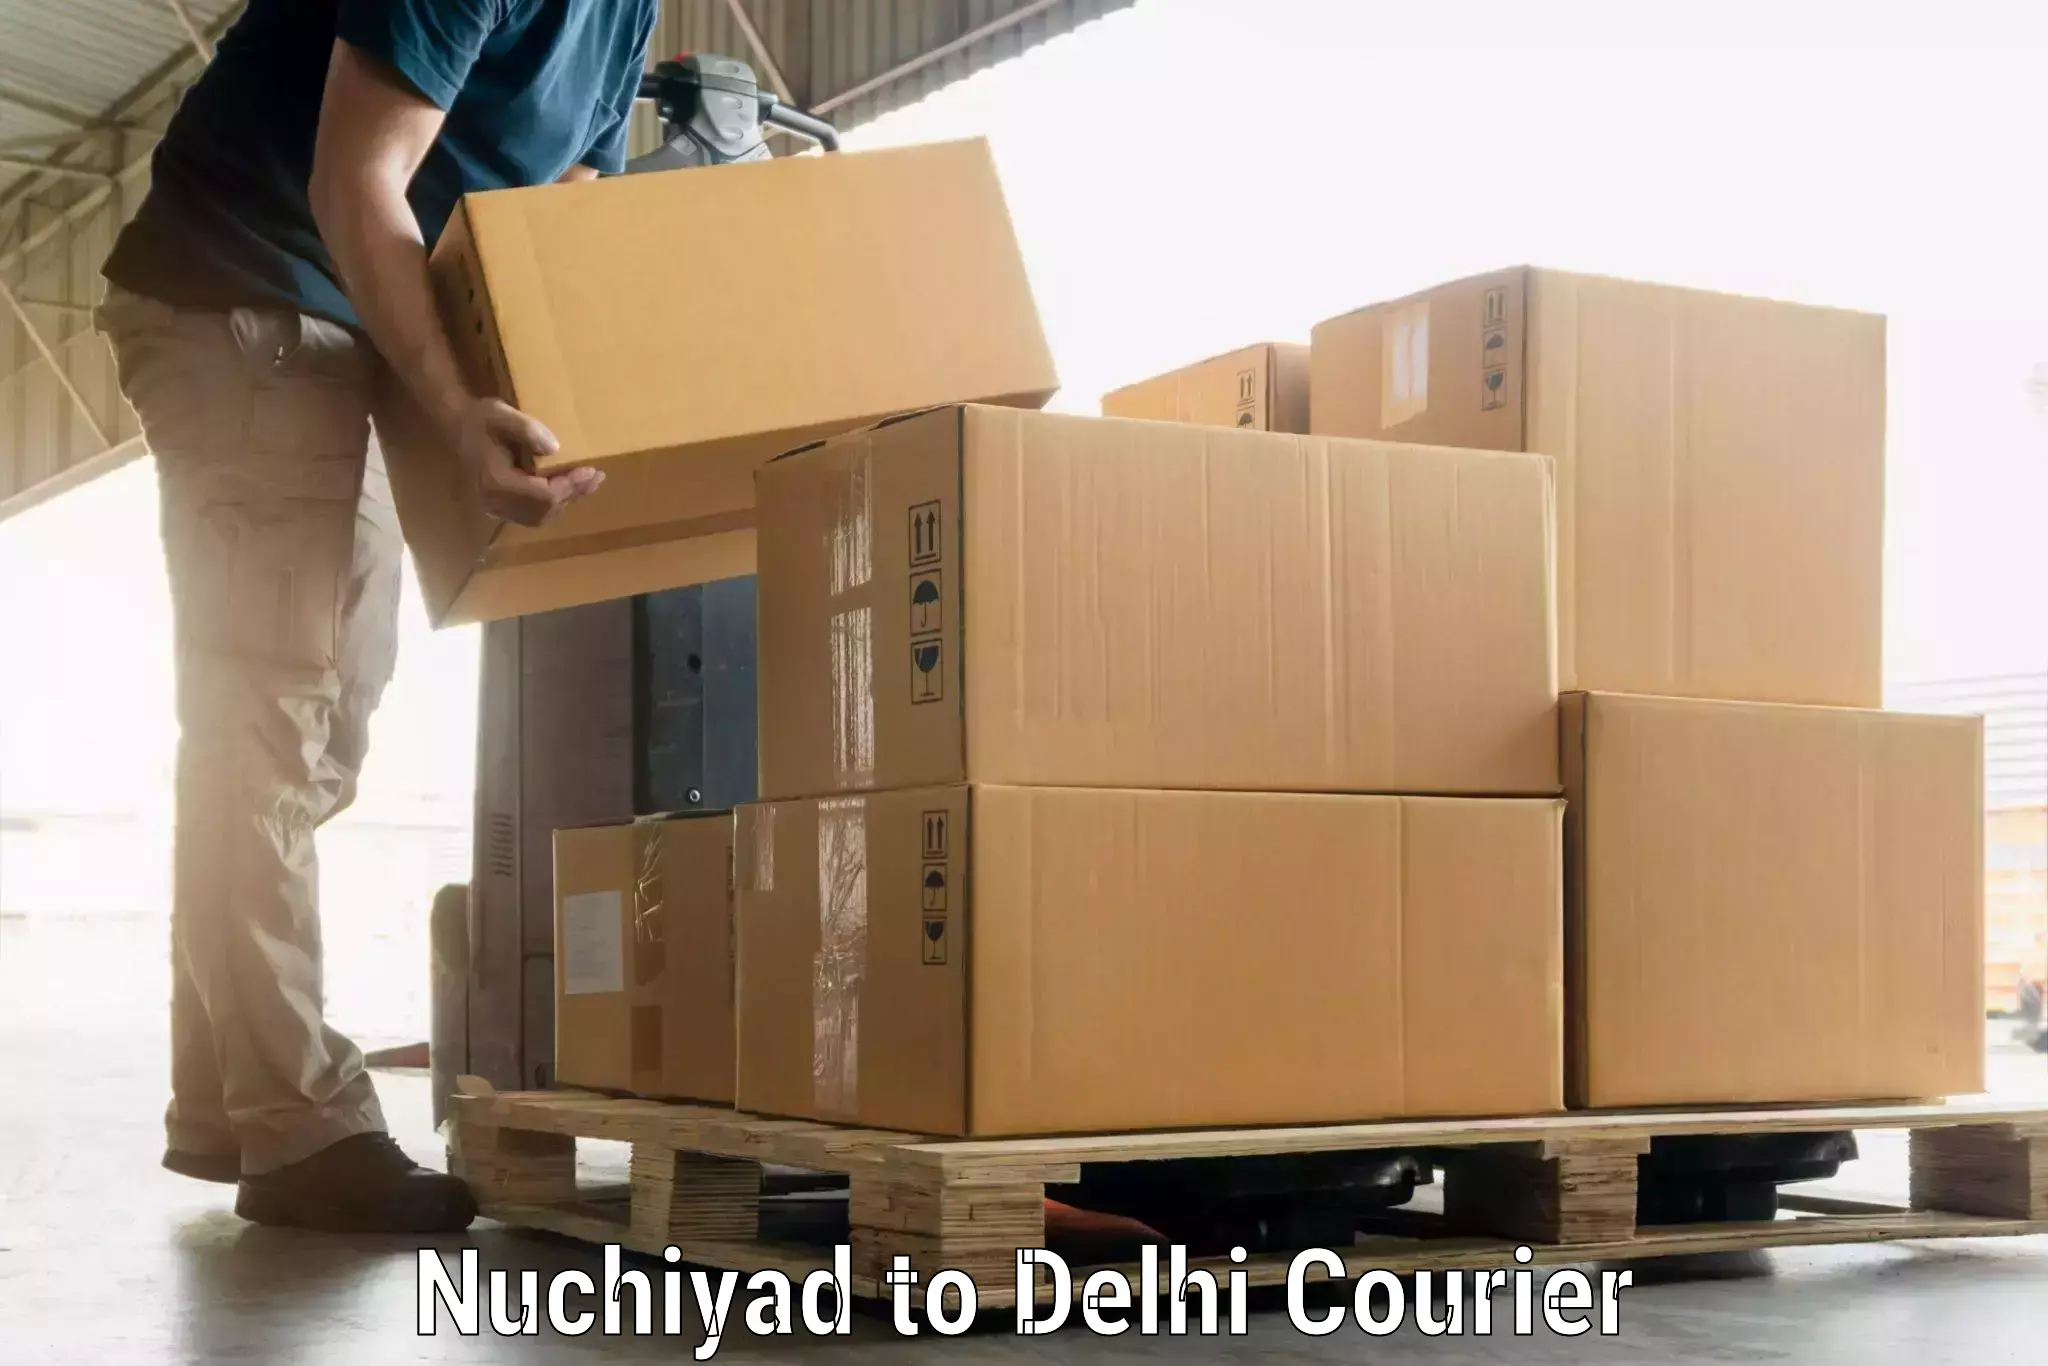 Luggage shipment specialists Nuchiyad to Ramesh Nagar